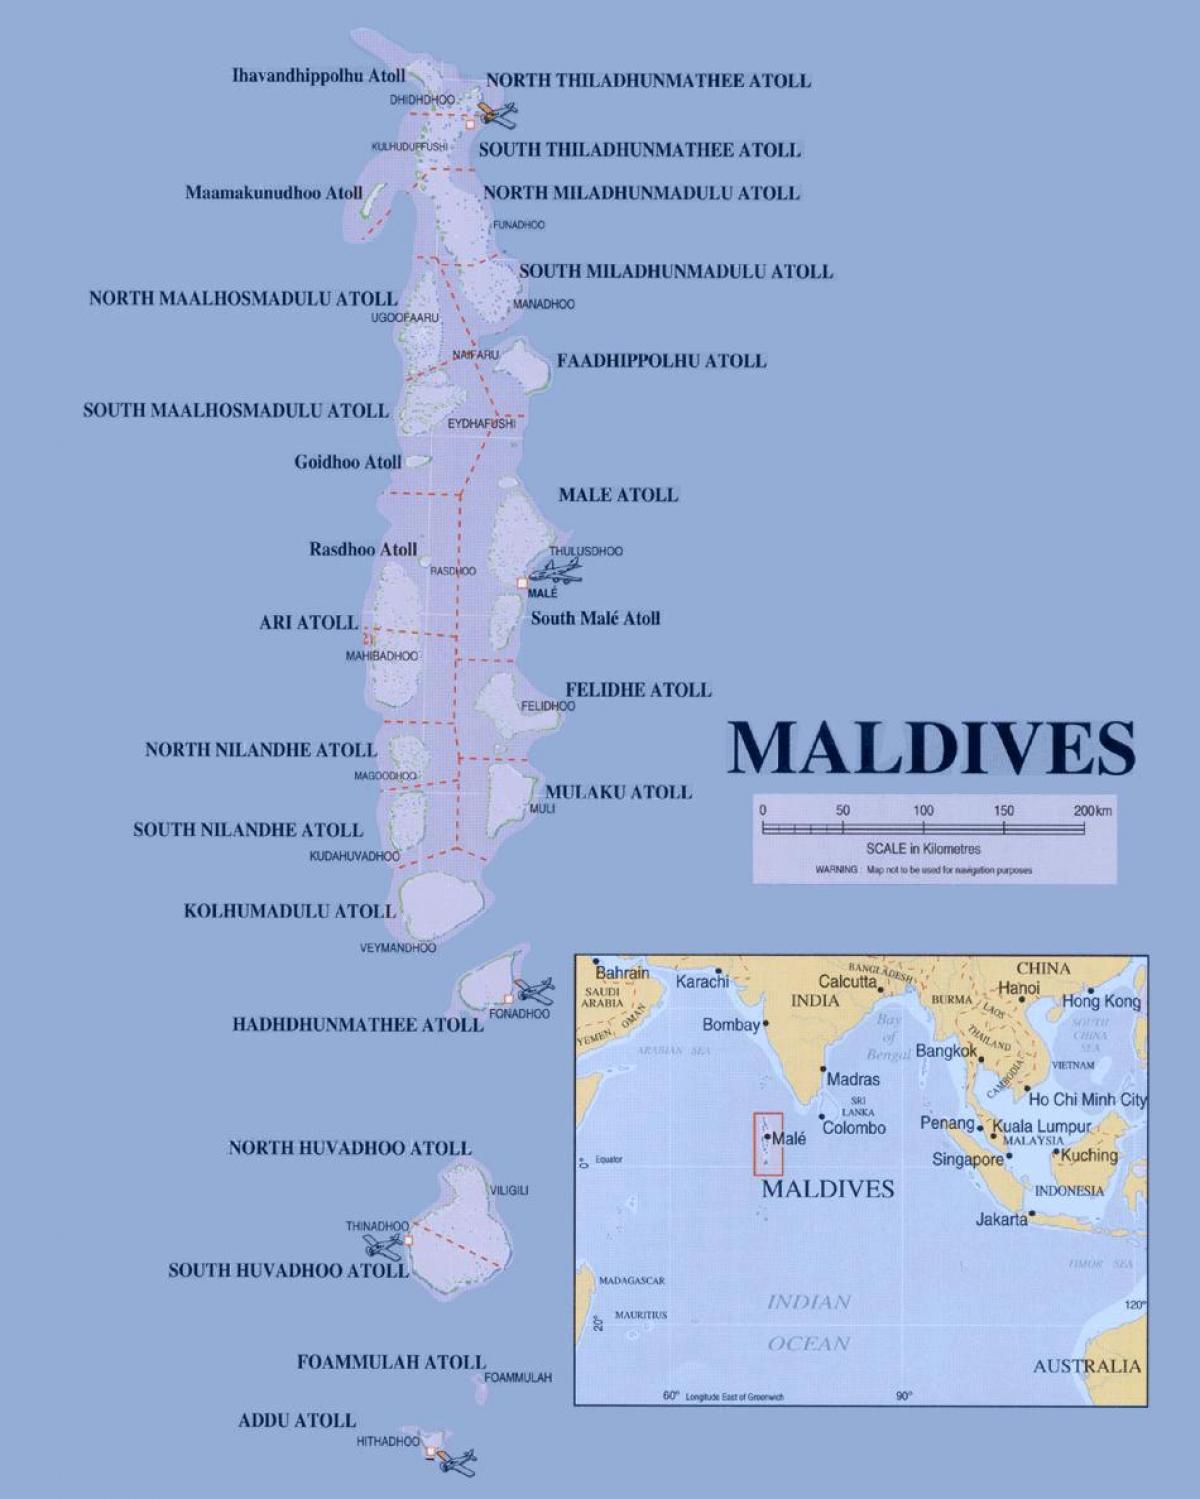 мапата покажувајќи малдивите